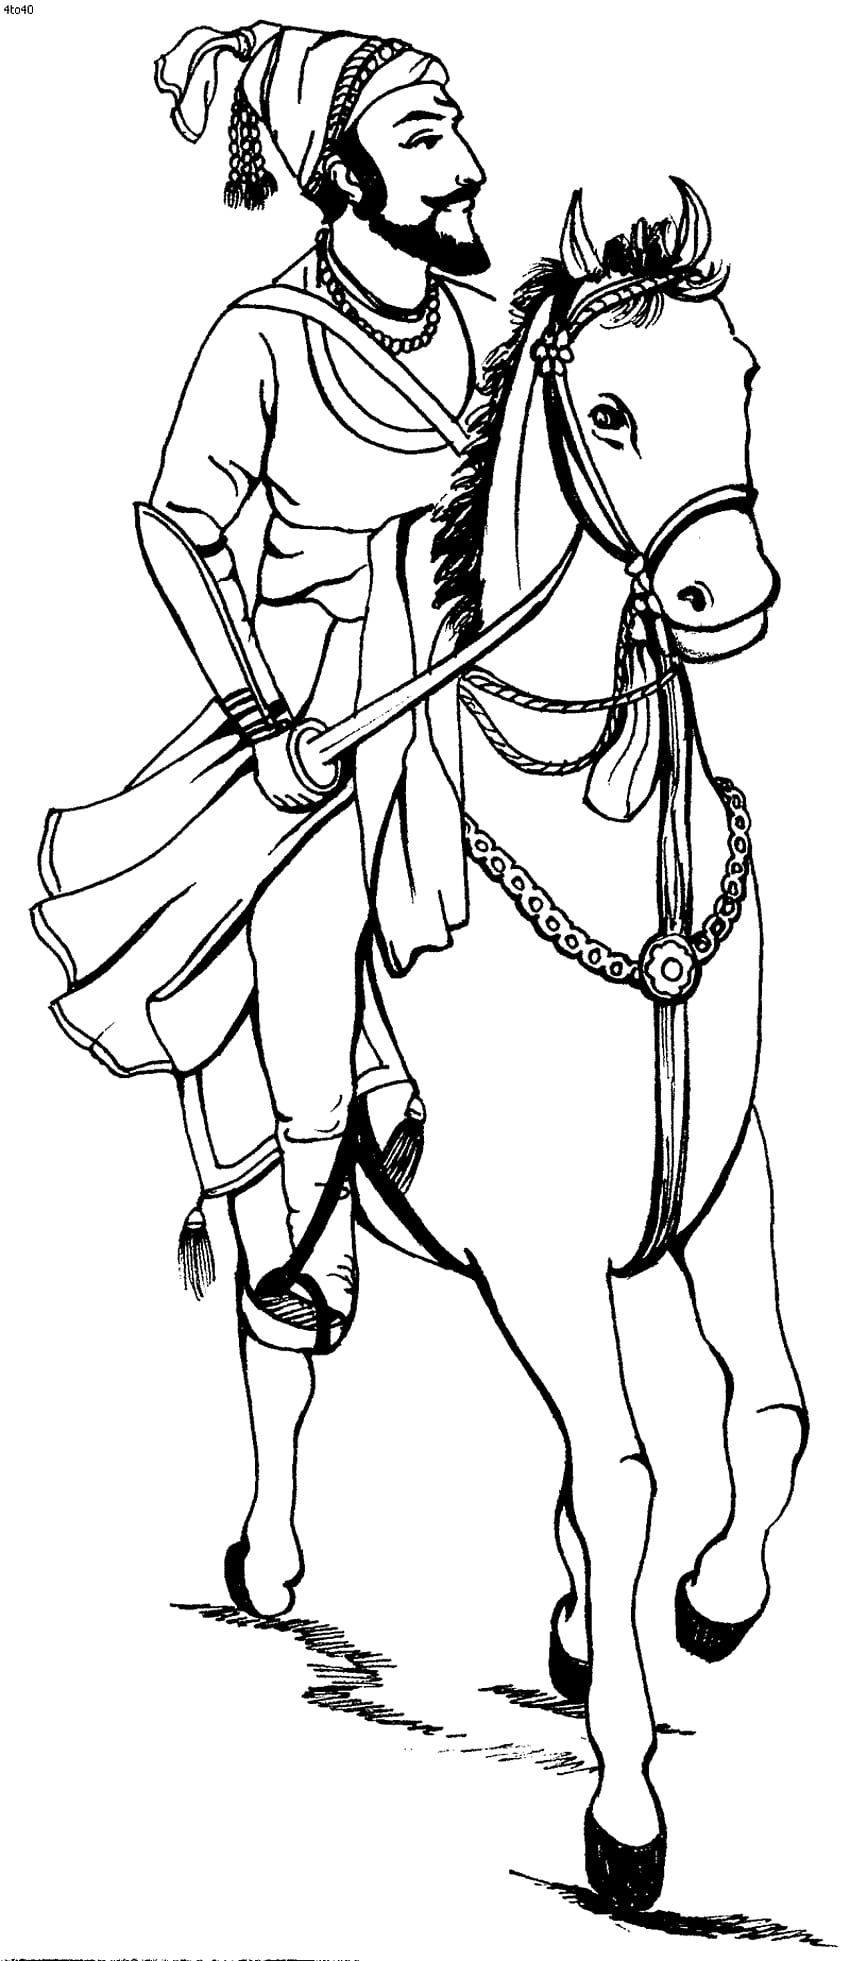 Shivaji Maharaj pencil sketch Art-saigonsouth.com.vn